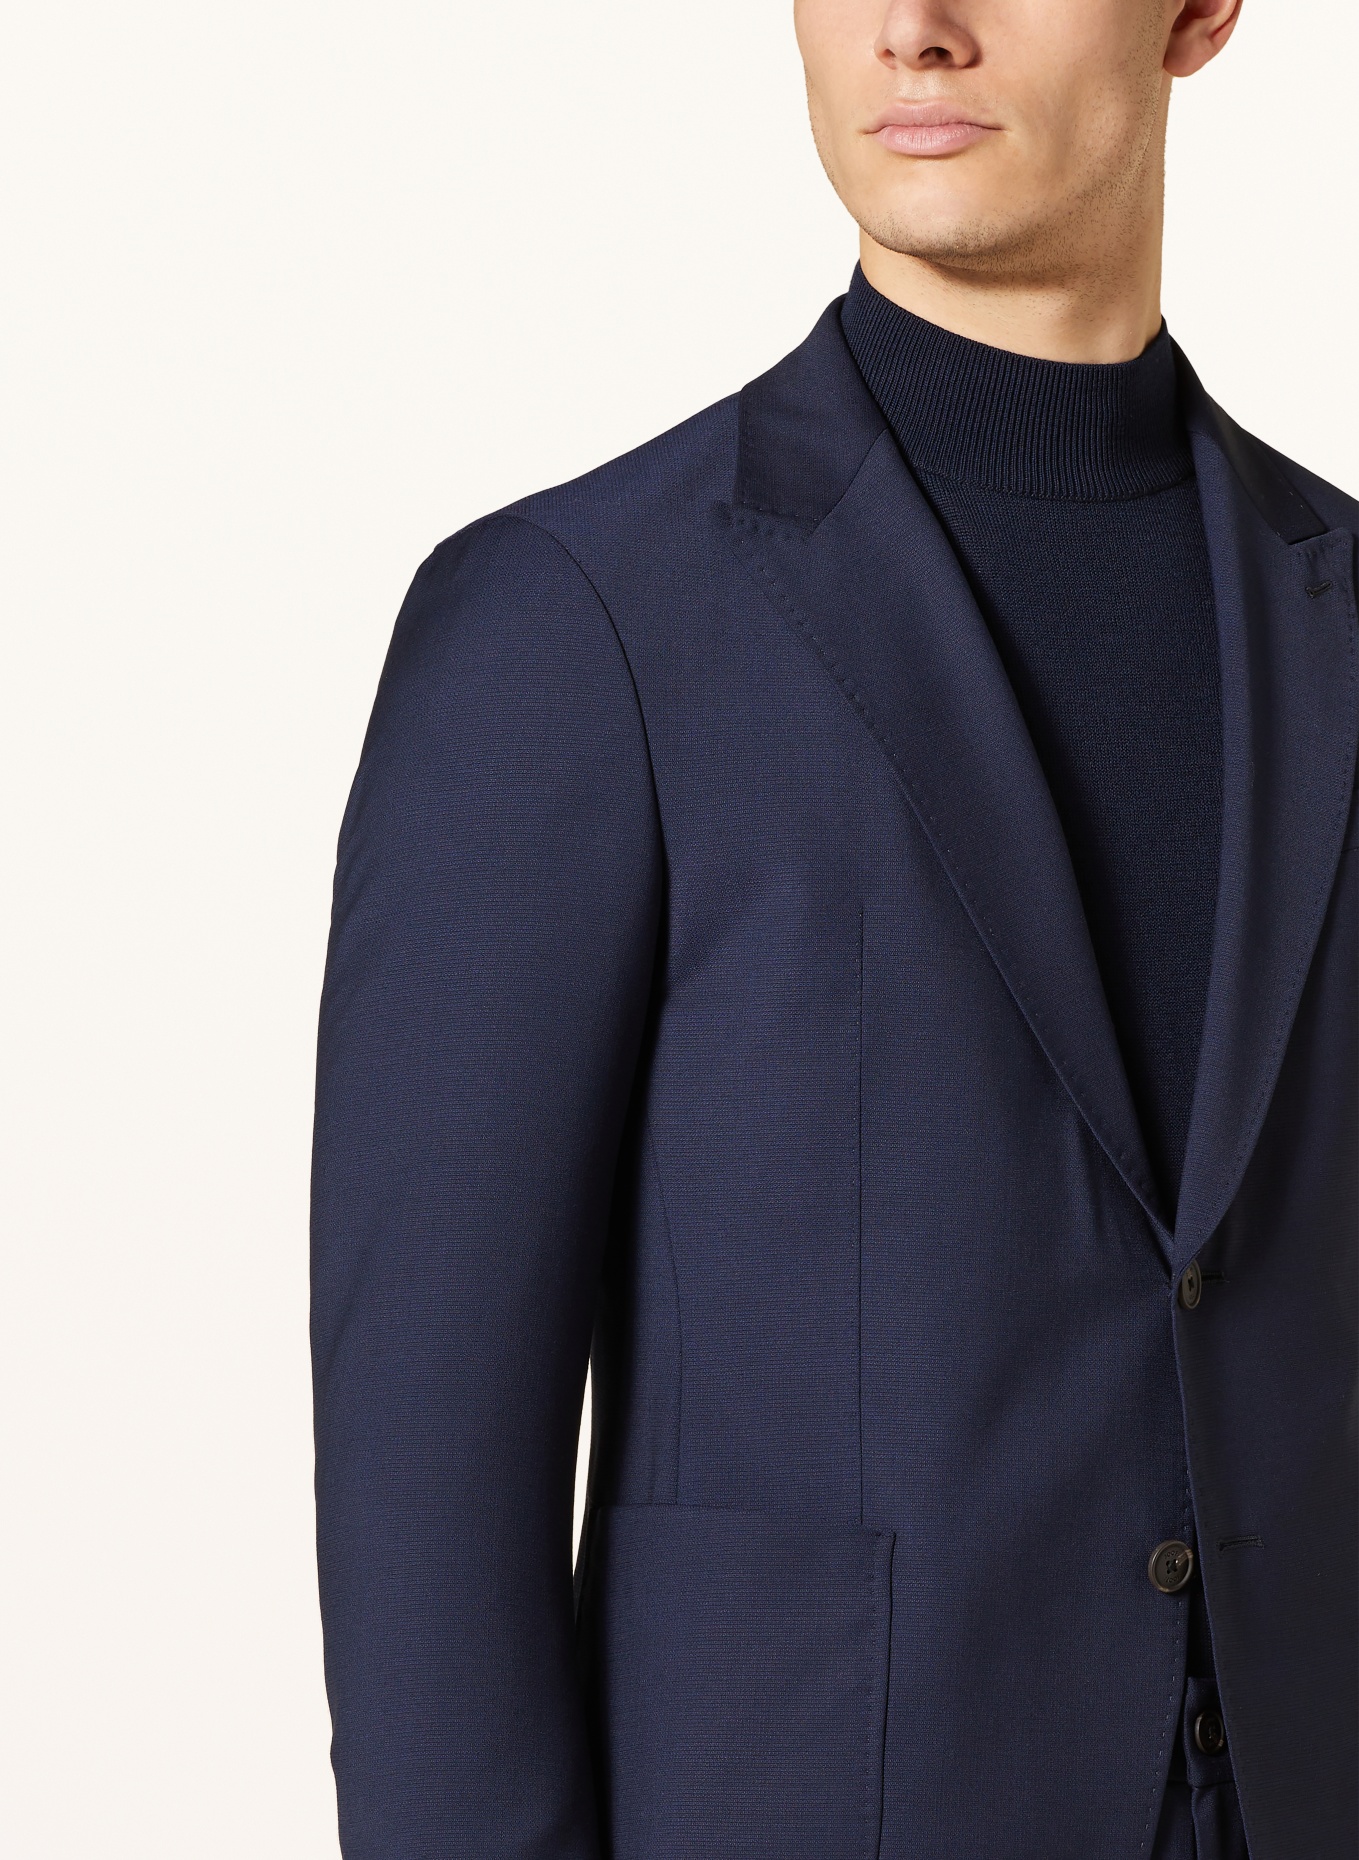 JOOP! Suit jacket HAKEEM slim fit, Color: 401 Dark Blue                  401 (Image 5)